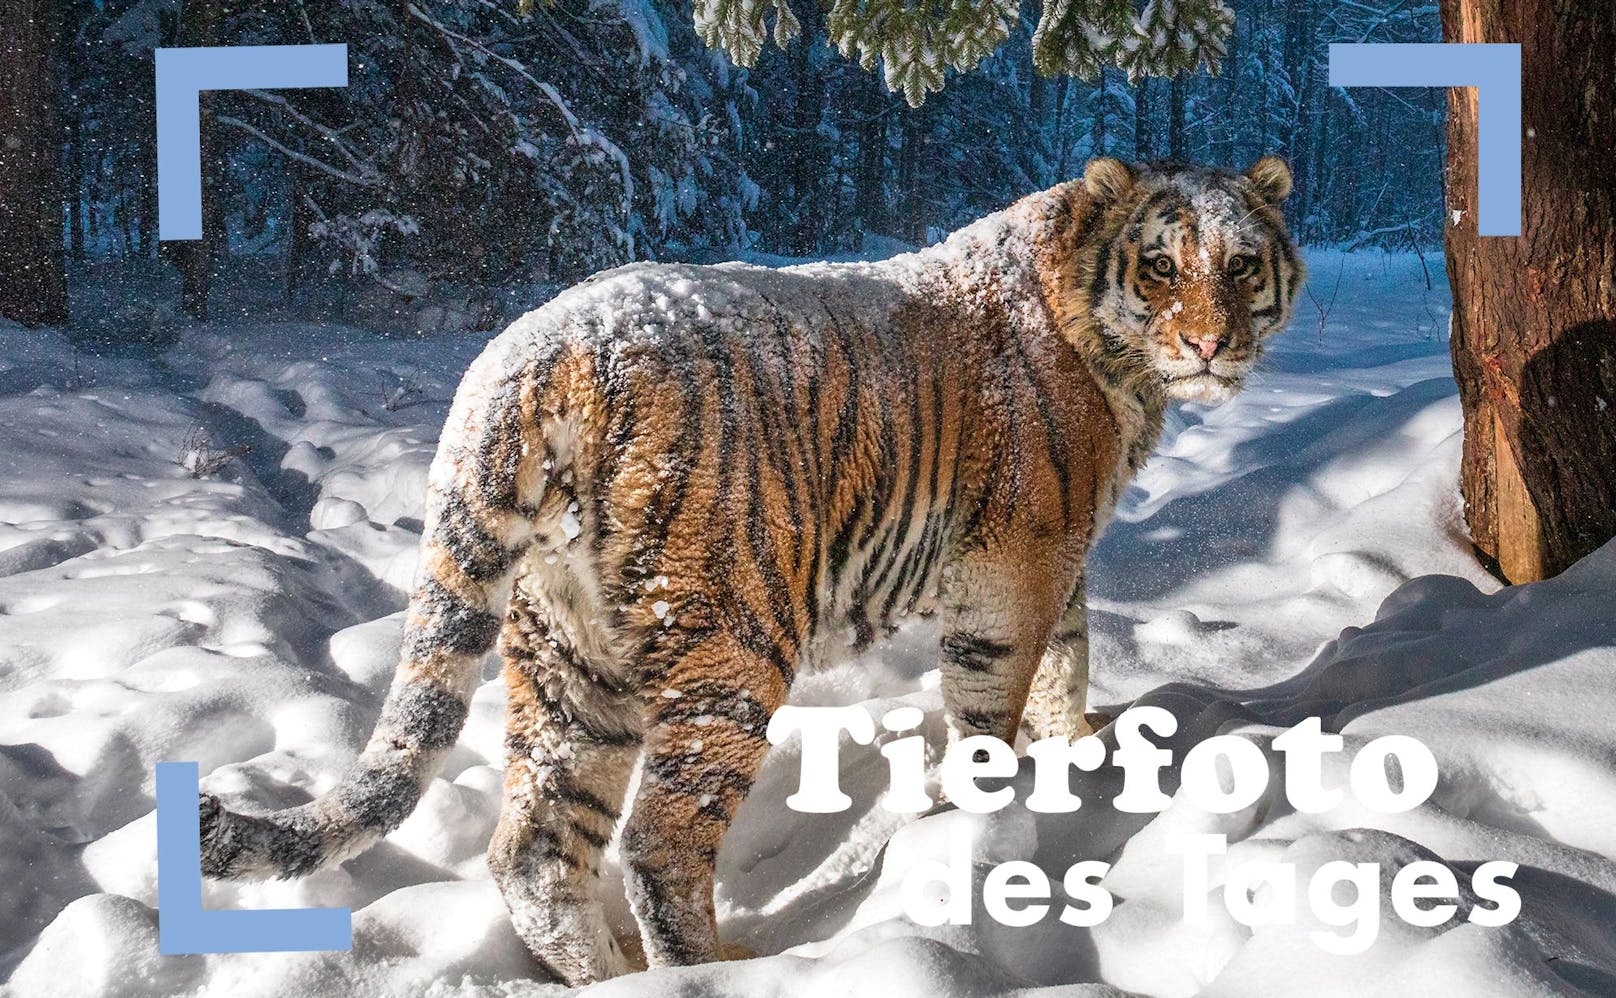 Dieser anmutige Sibirische Tiger ging in eine Fotofalle. Für den Fotografen war dies natürlich ein Highlight. 